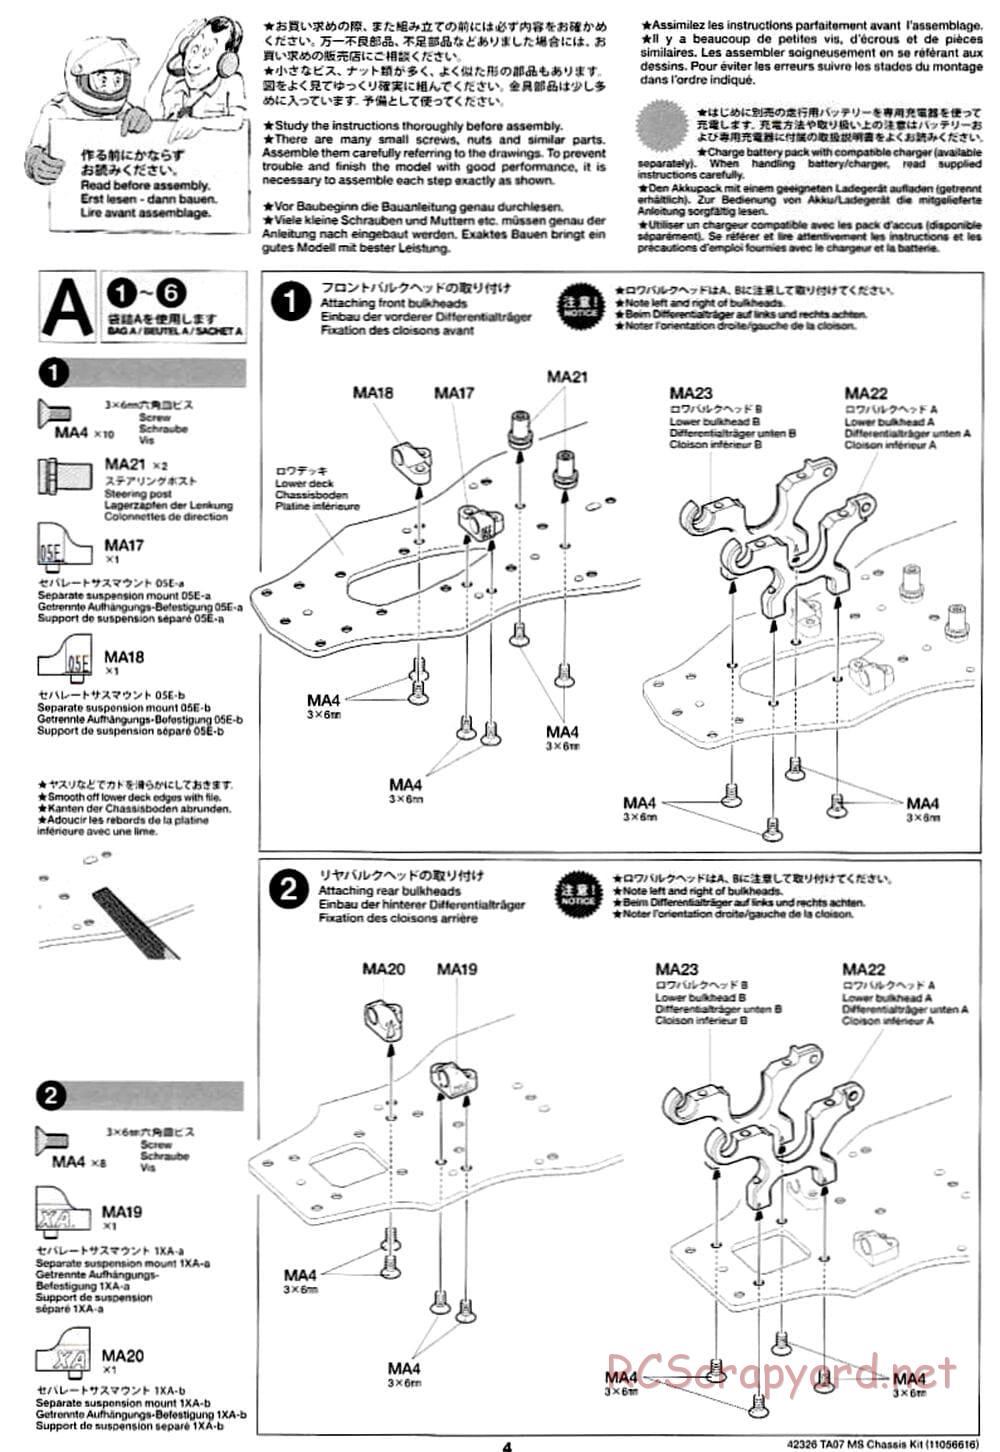 Tamiya - TA07 MS Chassis - Manual - Page 4